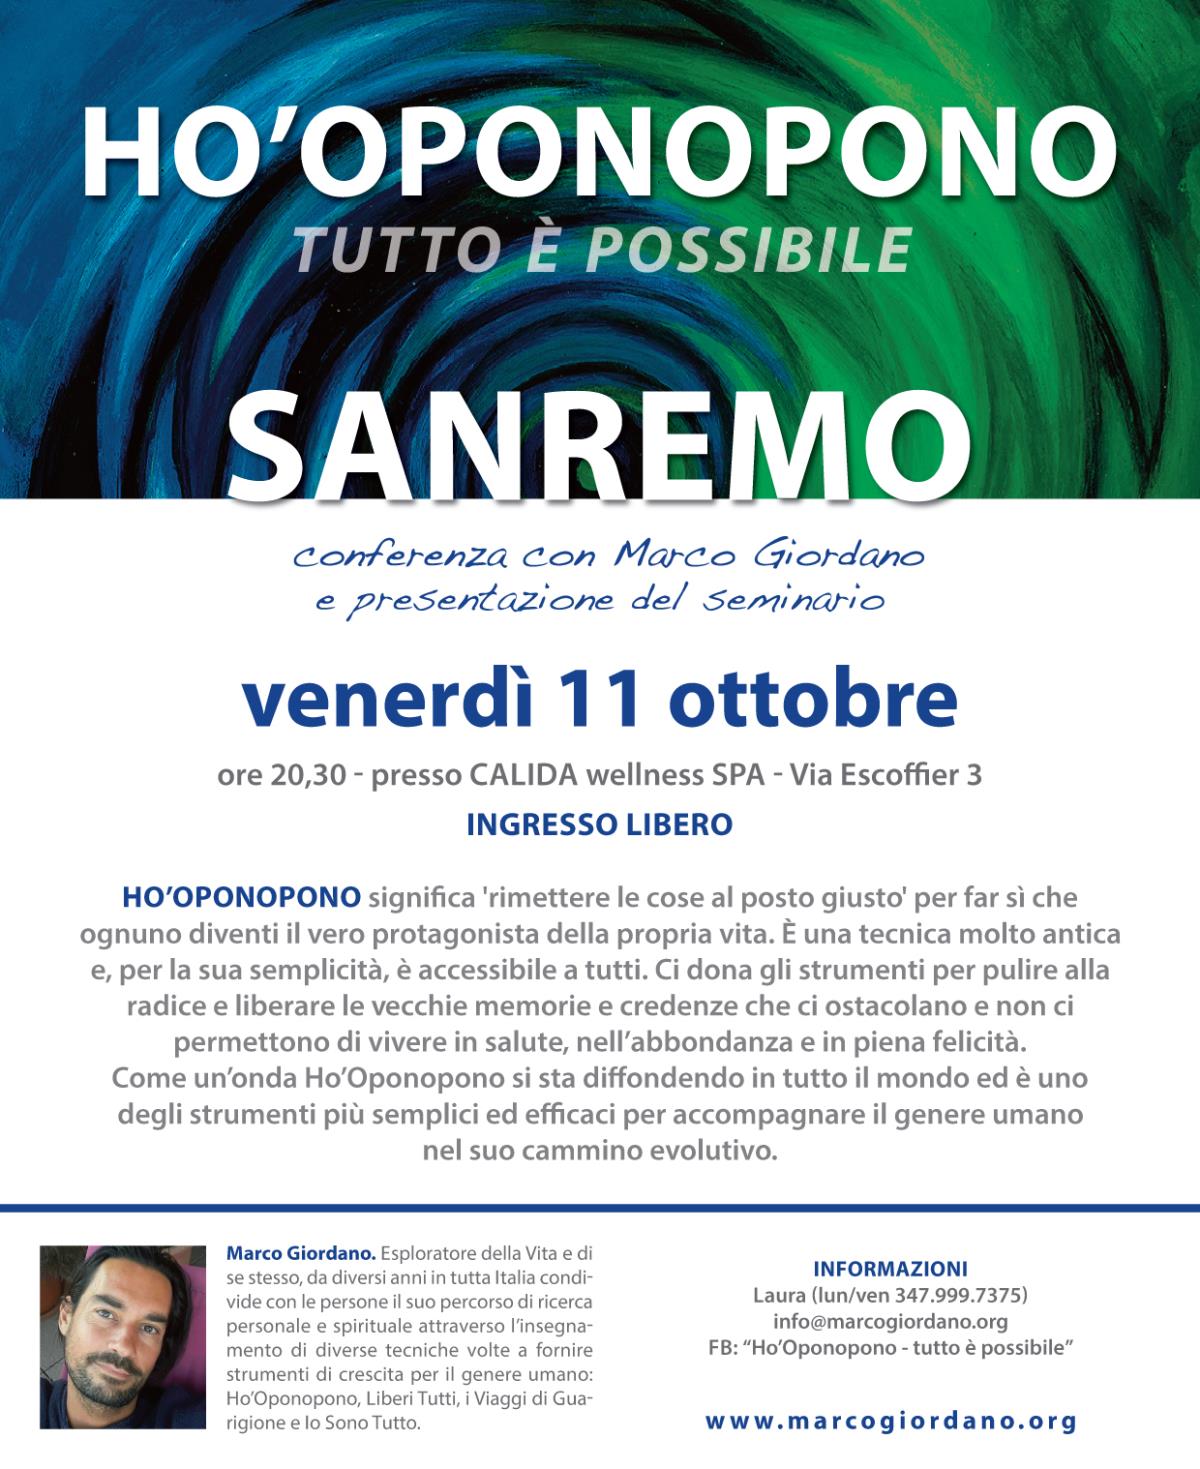 Conferenza e presentazione del seminario <b>HO'OPONOPONO Tutto  Possibile</b> venerd 11 ottobre <b>SANREMO (IM)